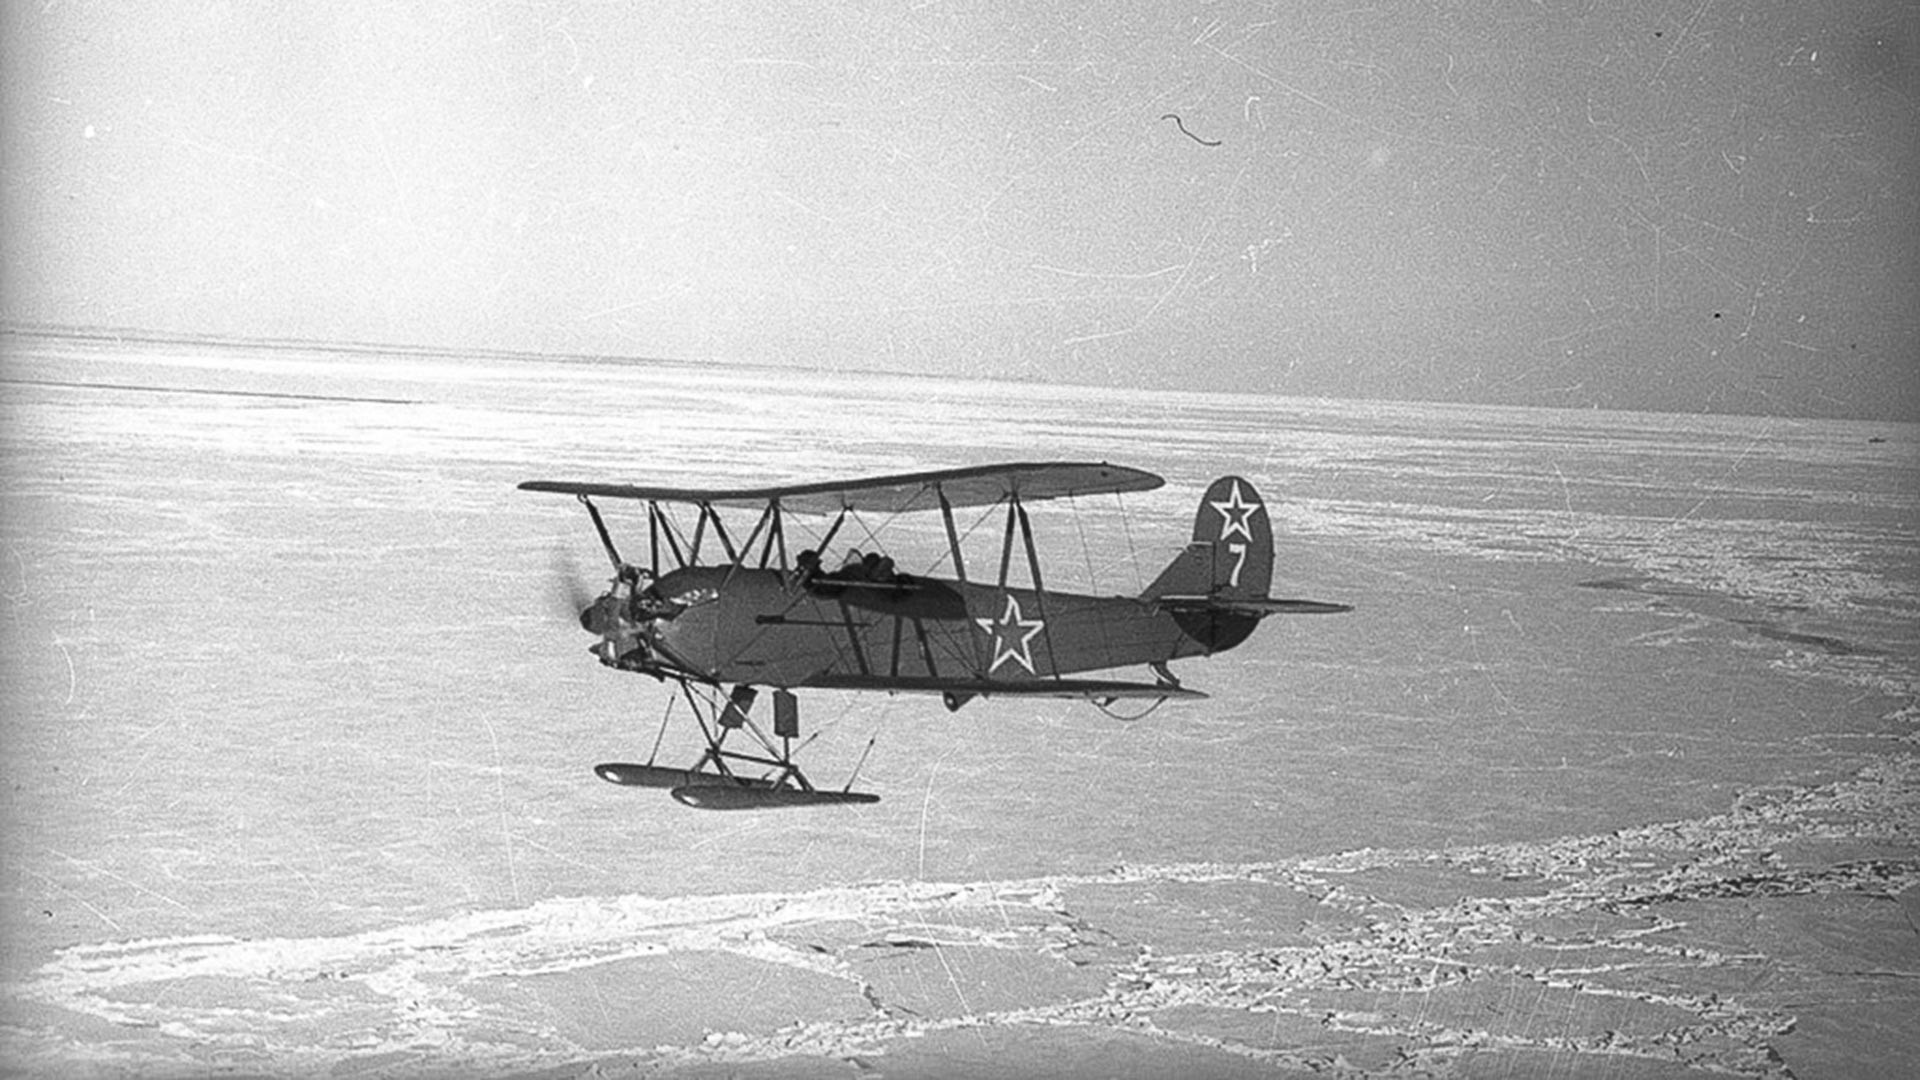 Самолет У-2 ще бъде свален от противниковата отбрана в нощта на 01.08.1943 г. Екипажът (пилот Полунина Валентина Ивановна и навигатор Каширина Глафира Алексеевна) ще загинат.